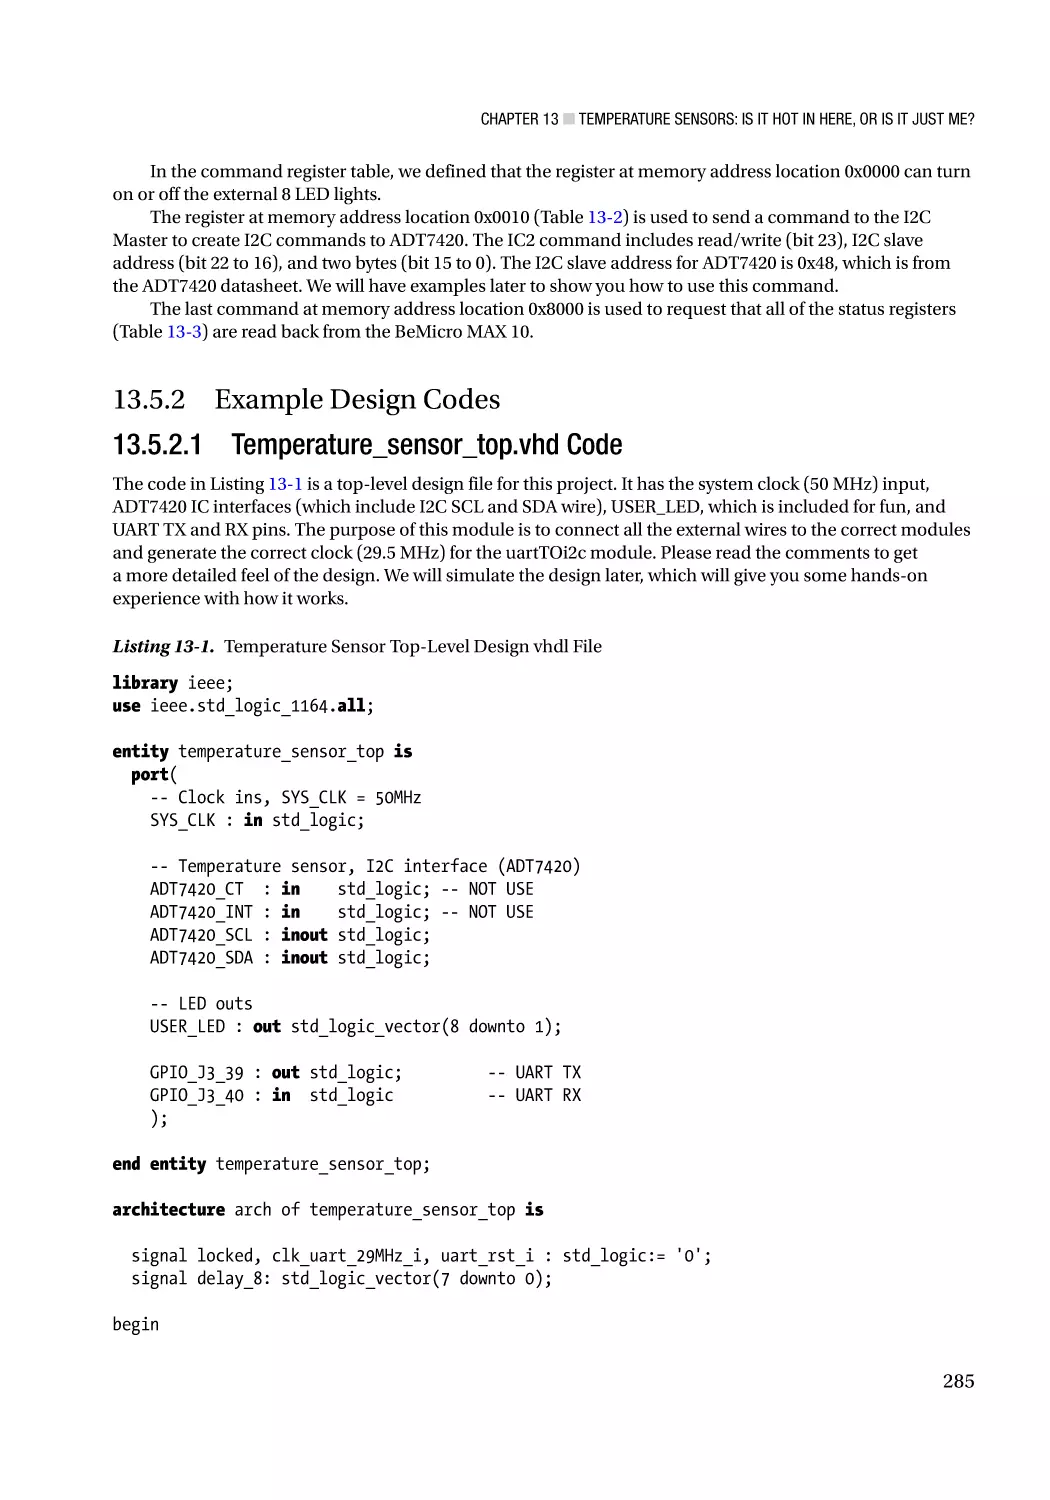 13.5.2 Example Design Codes
13.5.2.1 Temperature_sensor_top.vhd Code